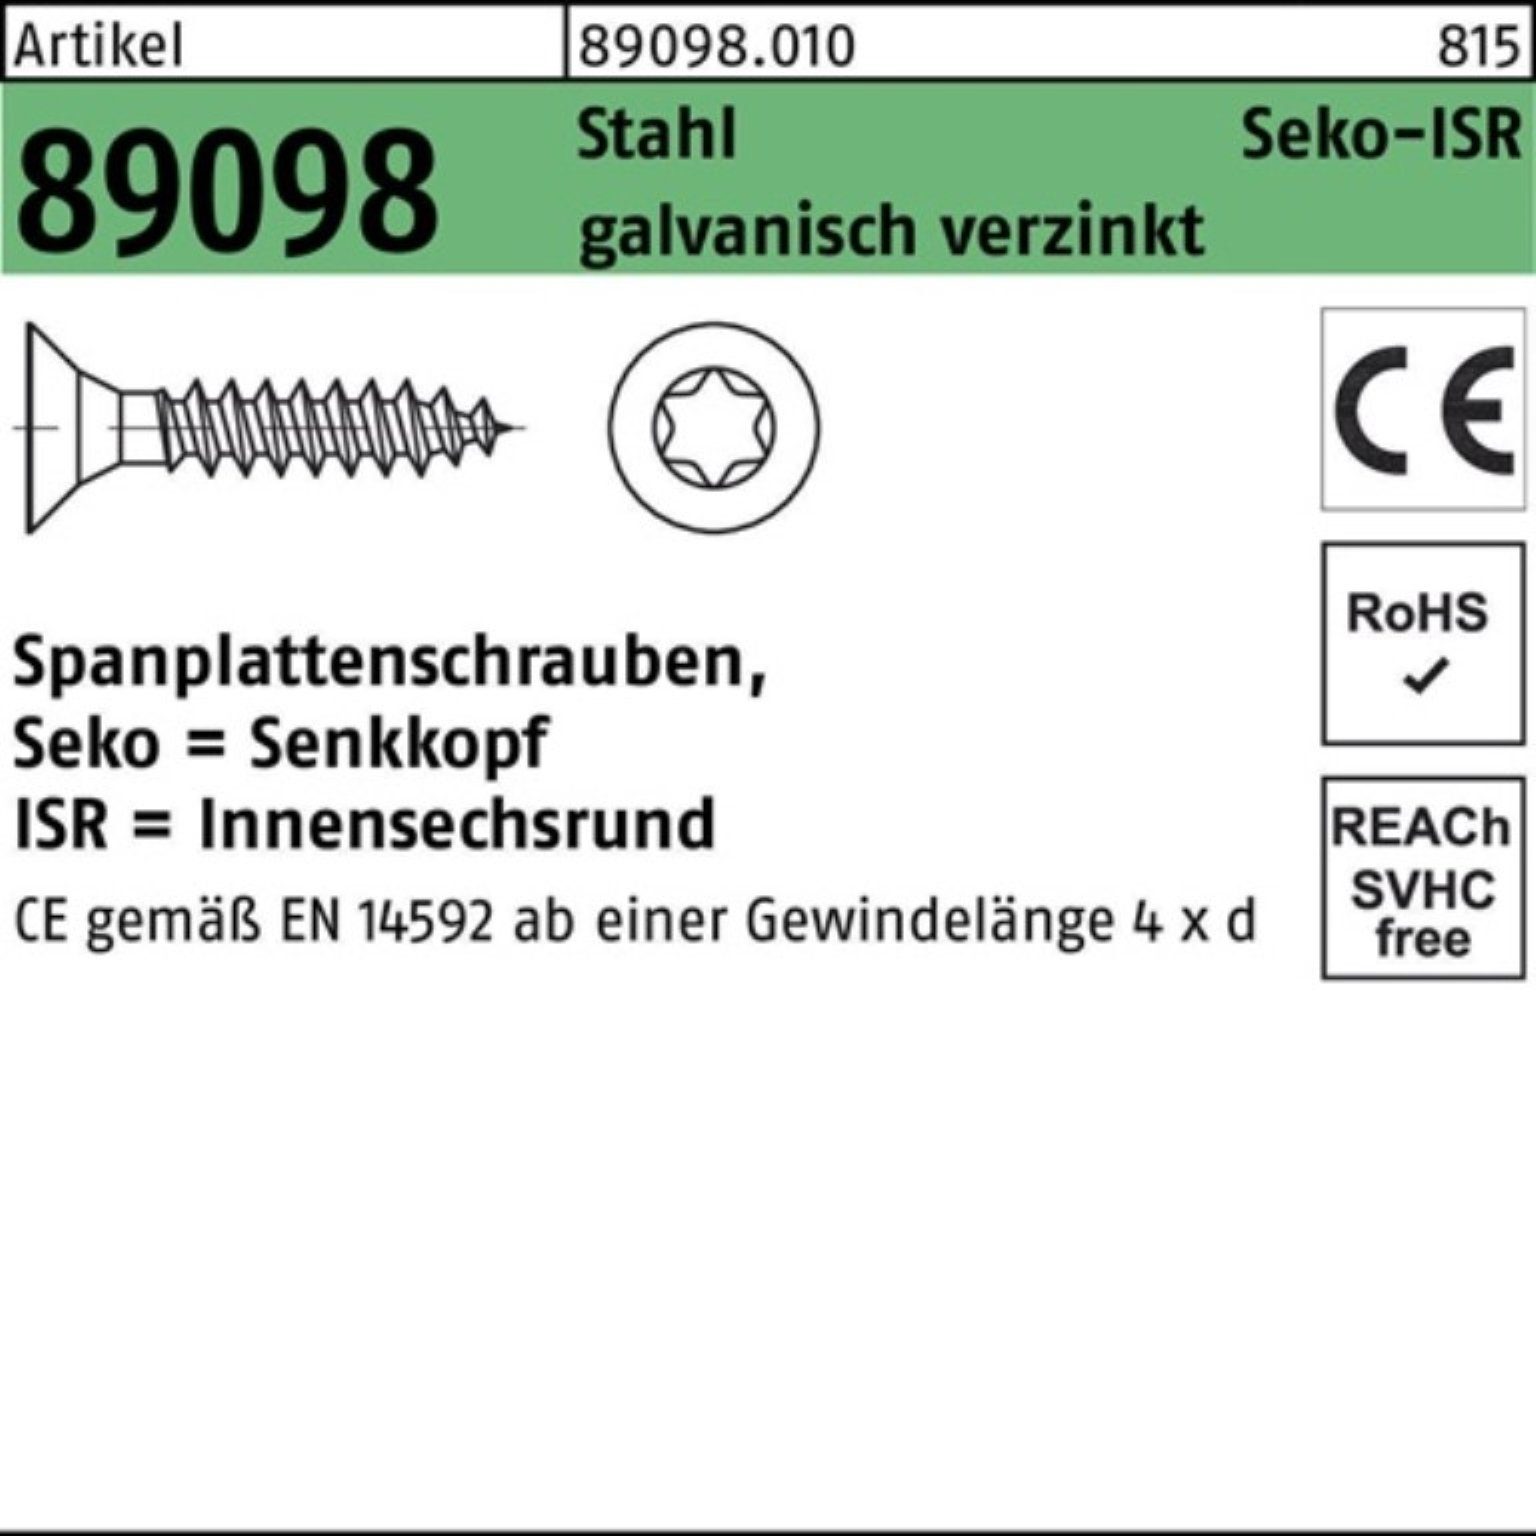 Reyher Spanplattenschraube 1000er 89098 VG Spanplattenschraube Pack gal ISR 3x16-T10 SEKO R Stahl